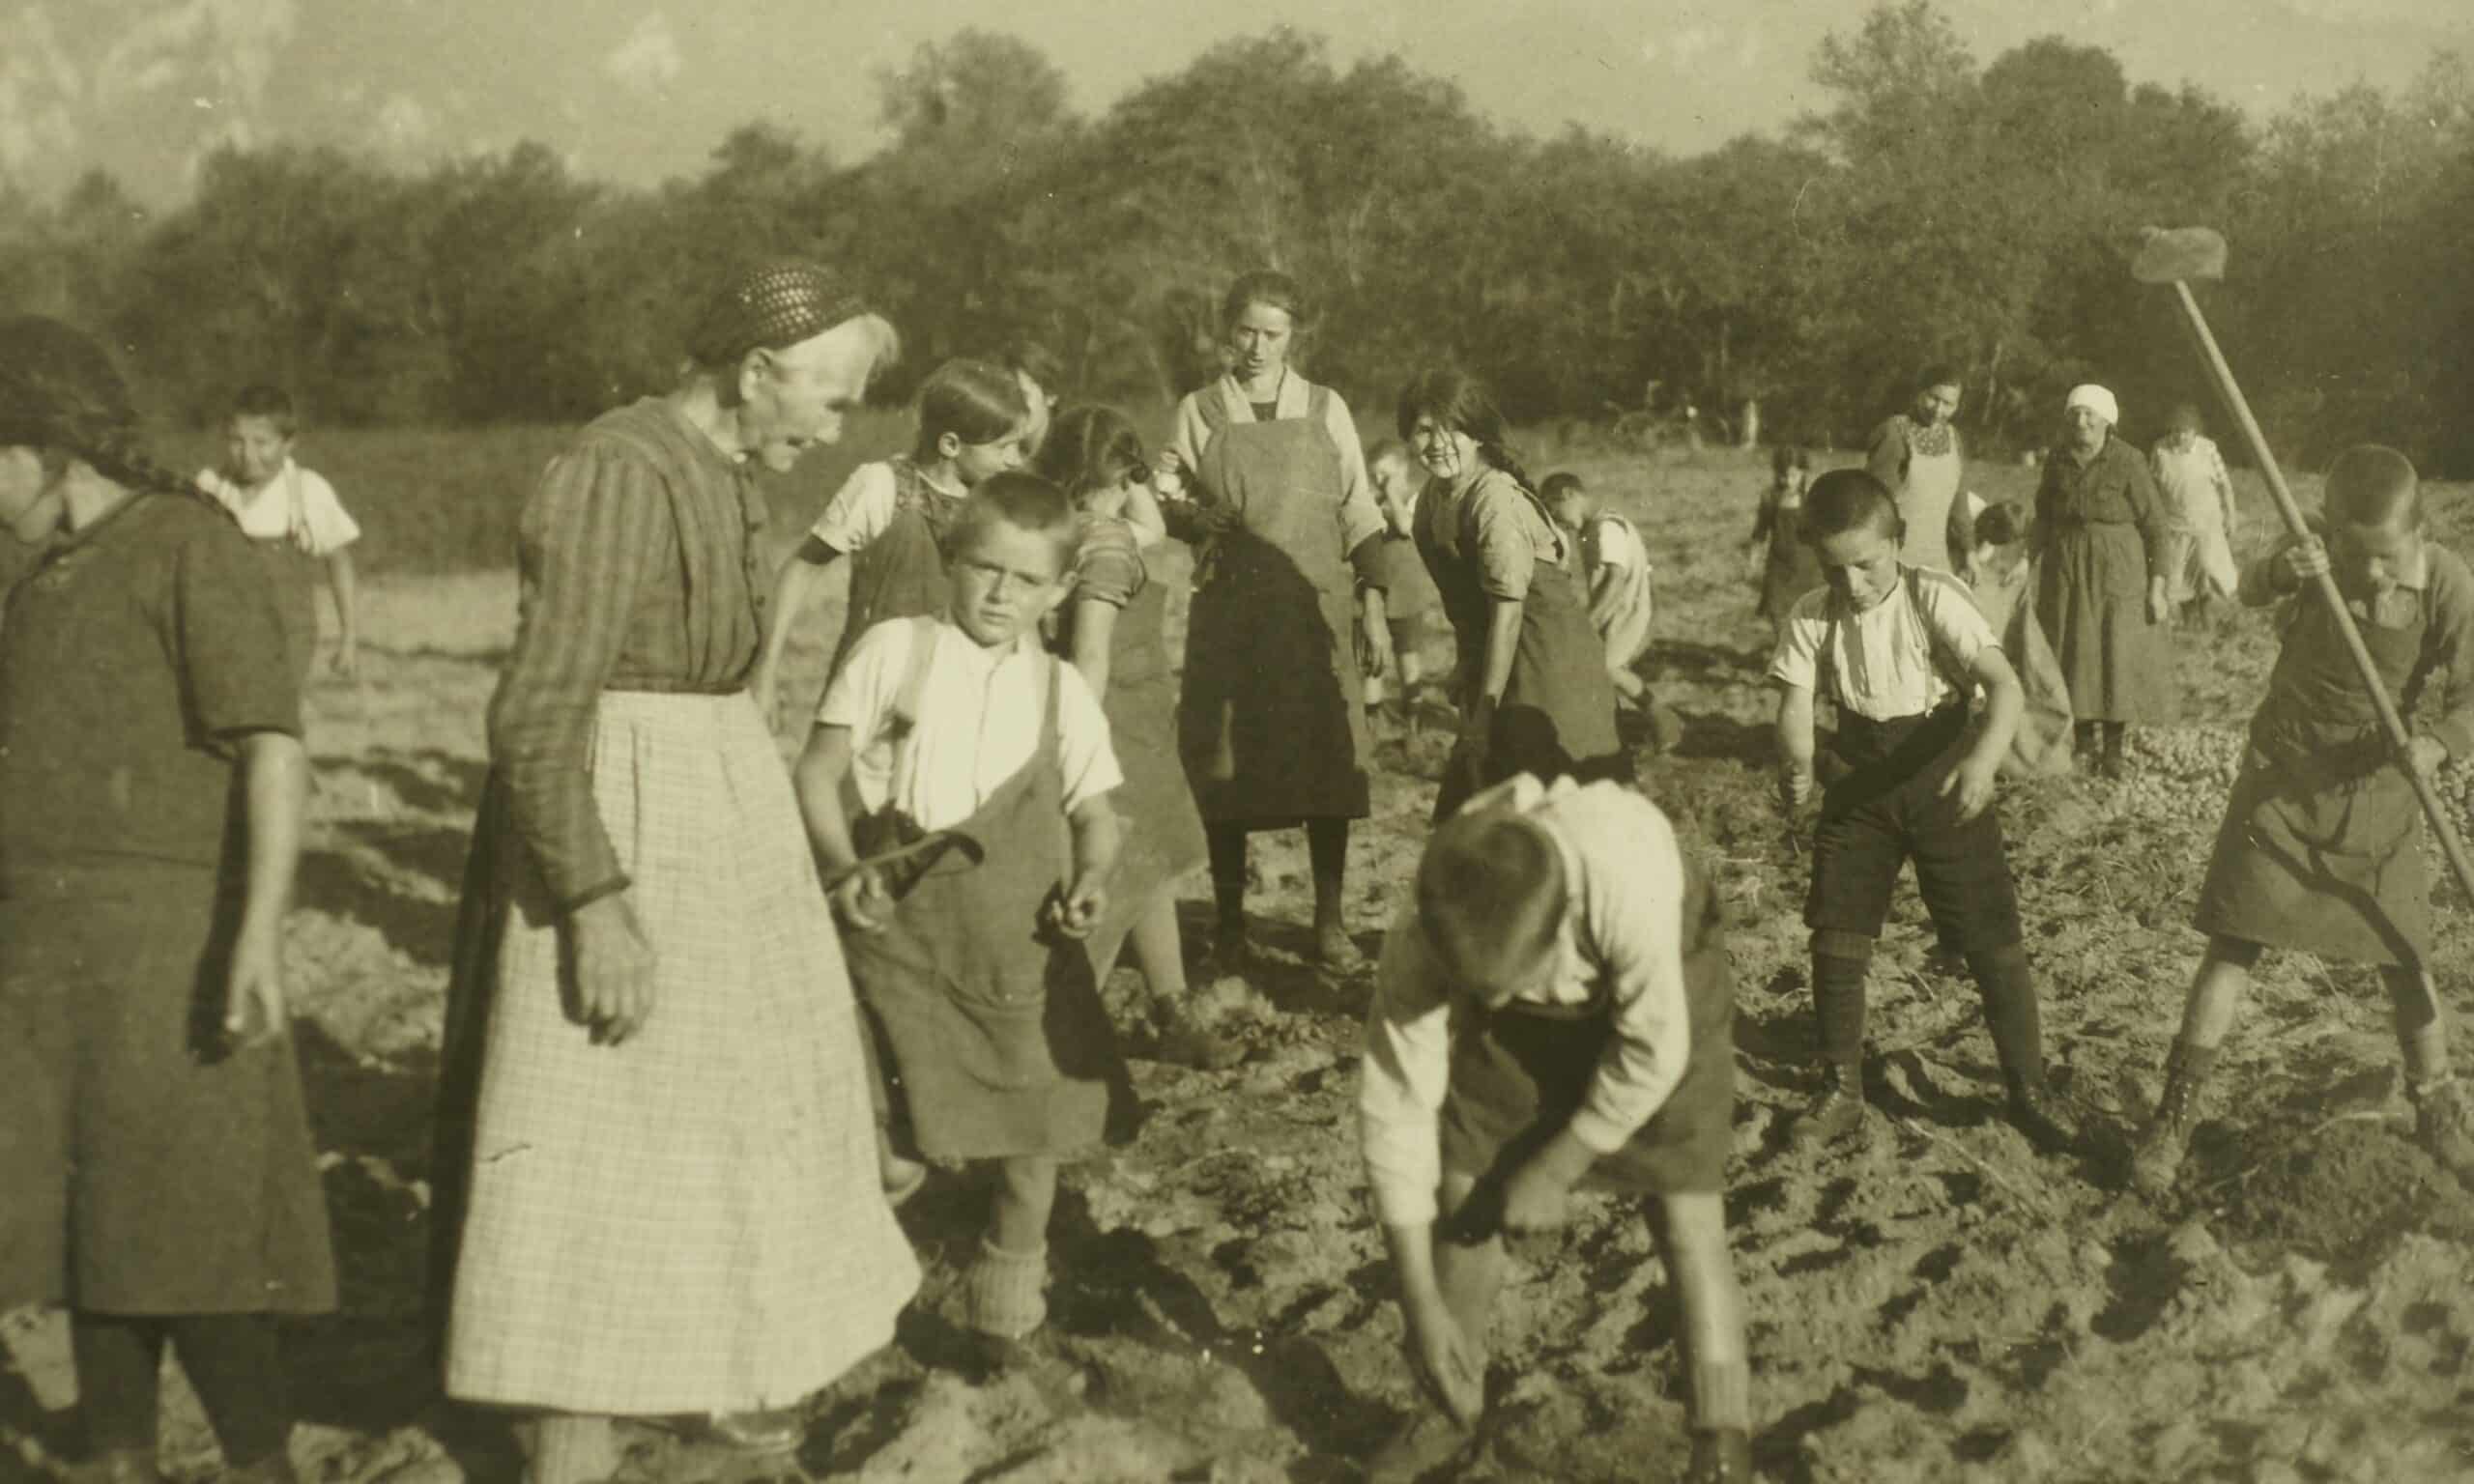 Дети и воспитатели из детского дома «Gott hilft» на картофельном поле в Цицерсе, кантон Граубюнден, около 1920 г. (© Fond Gott Hilft, Zizers, CH)